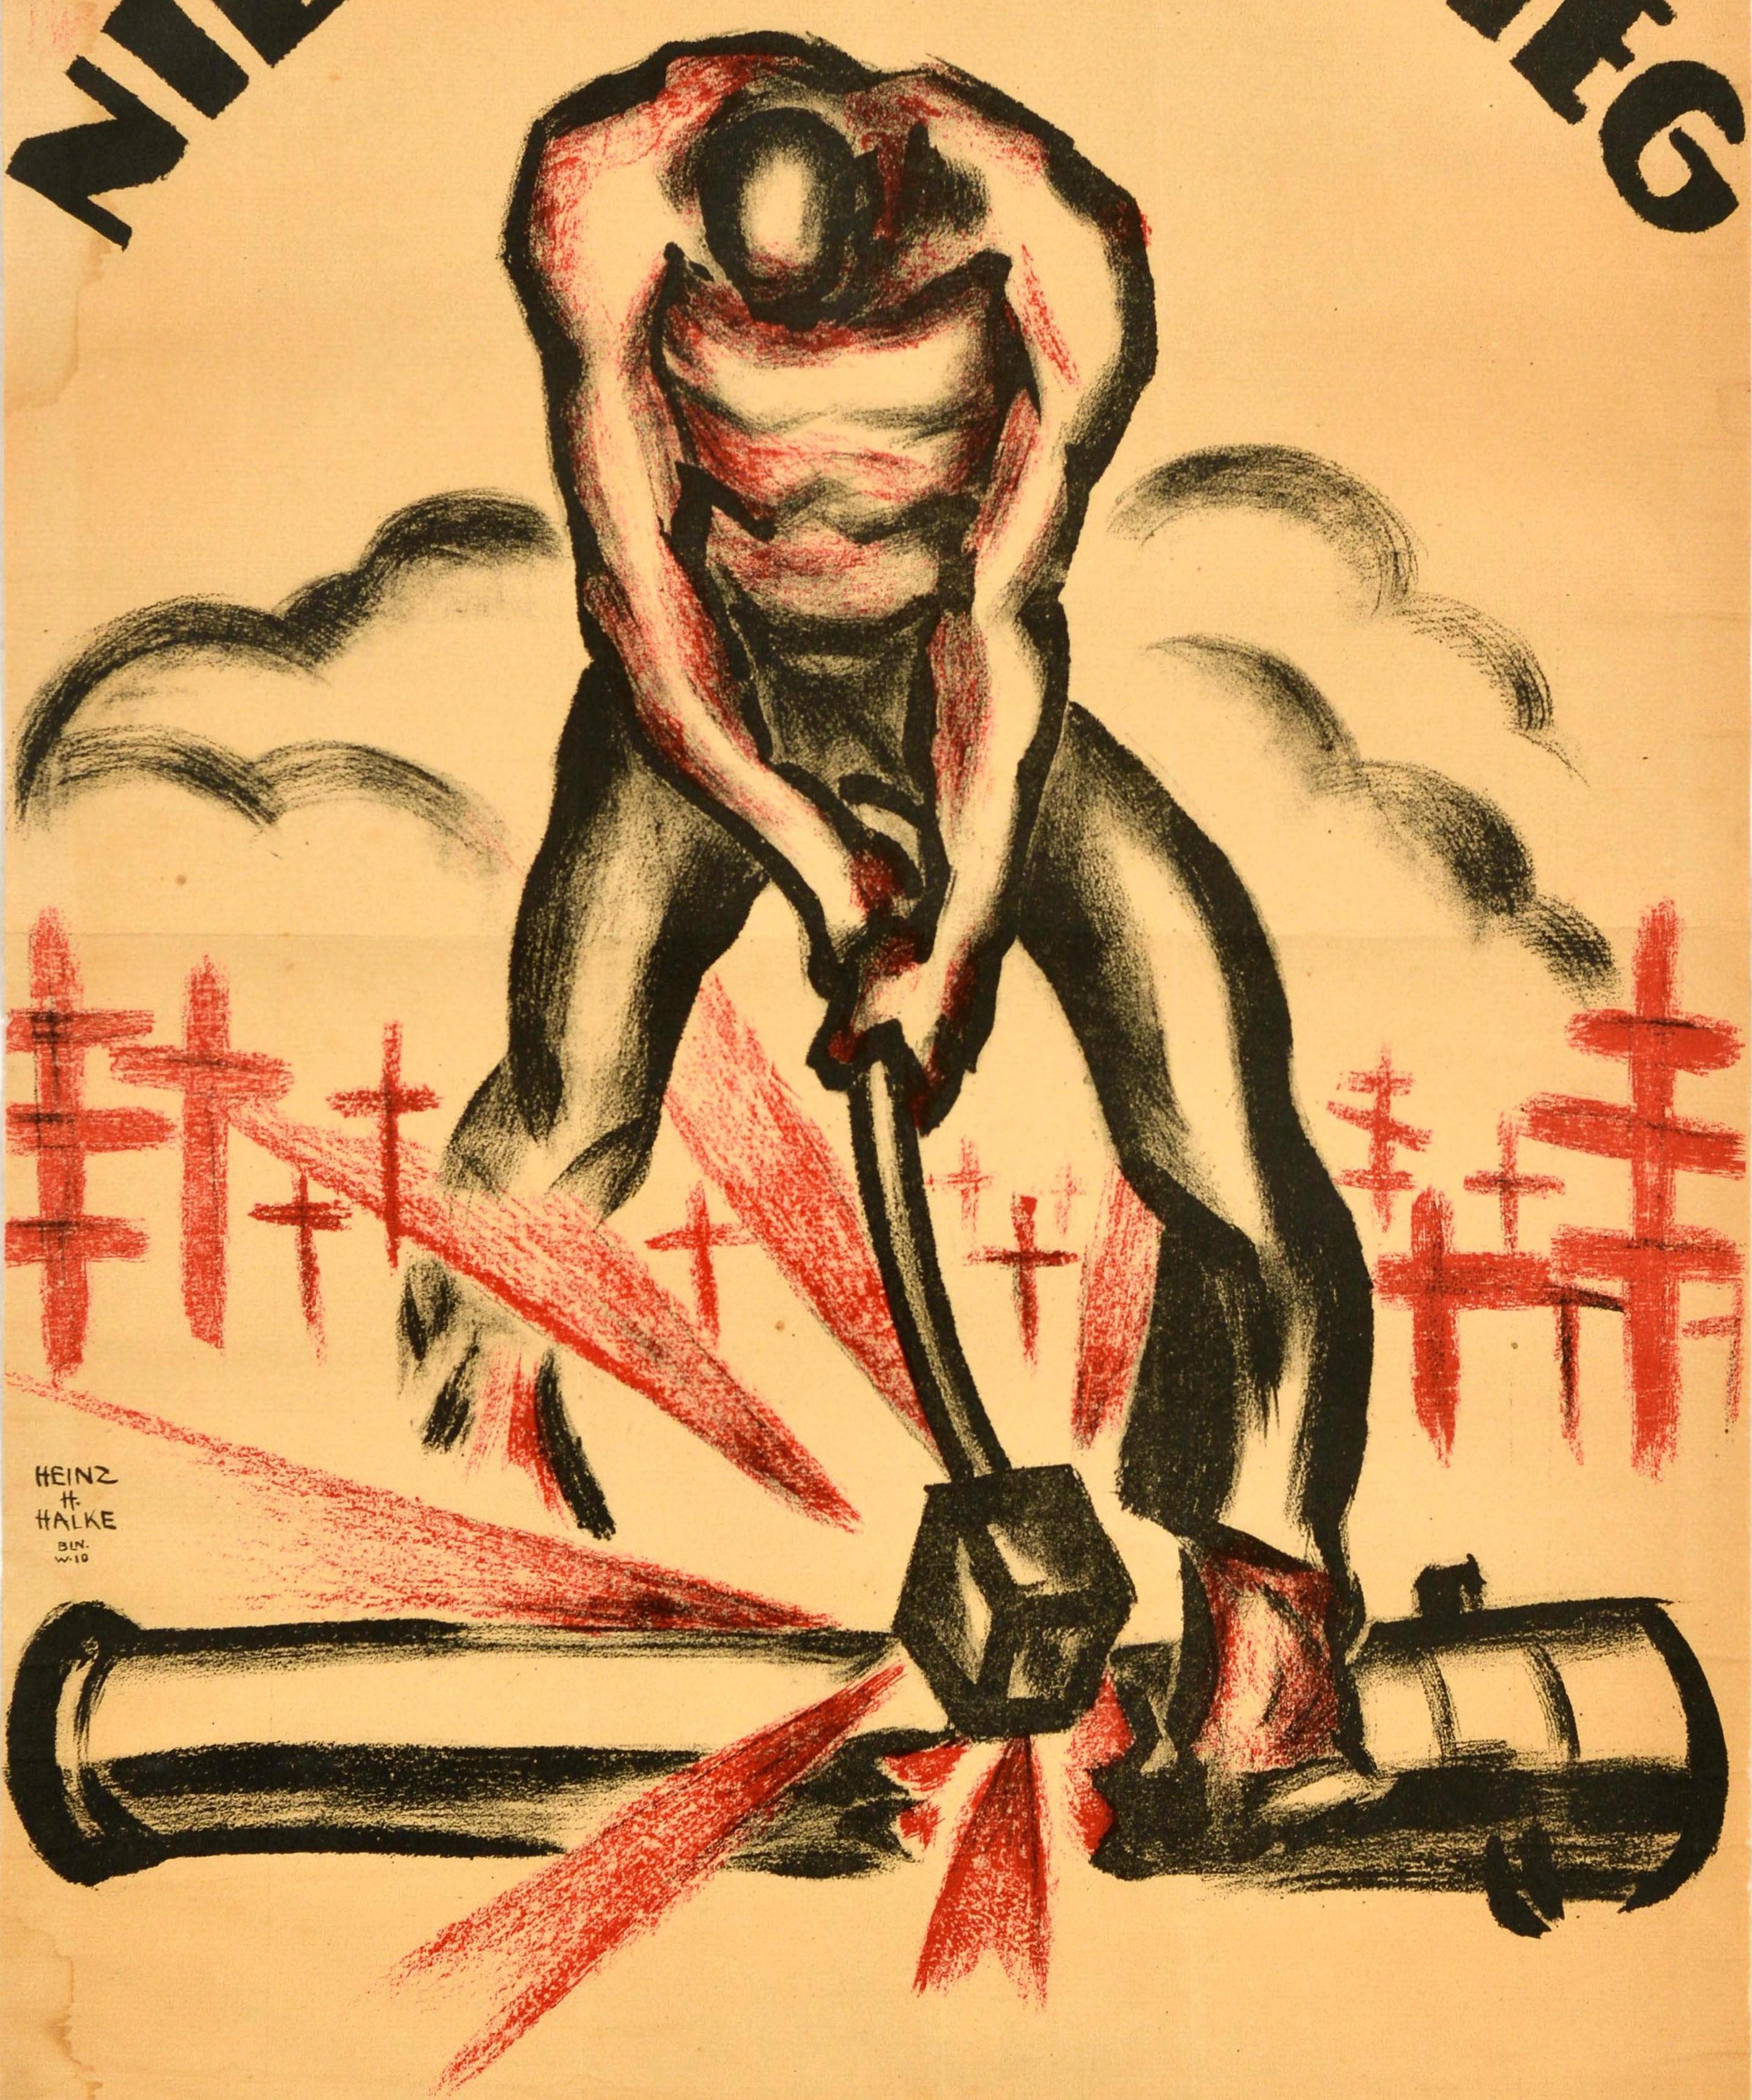 Original Antique WWI Poster Nie Wieder Krieg Never Again War Grave Cannon Strike - Orange Print by Heinz H Halke